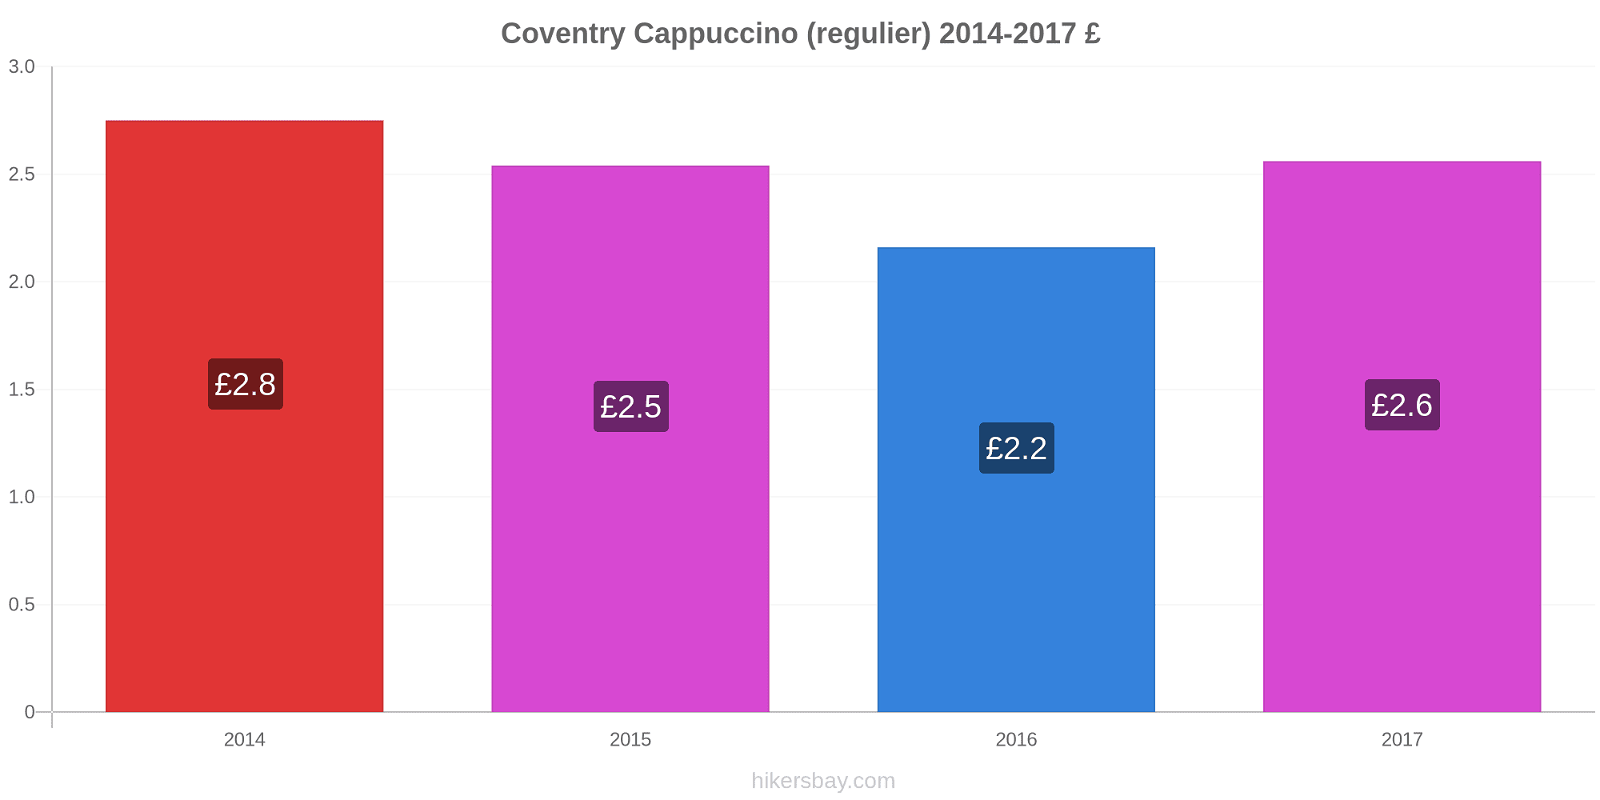 Coventry prijswijzigingen Cappuccino (regelmatige) hikersbay.com